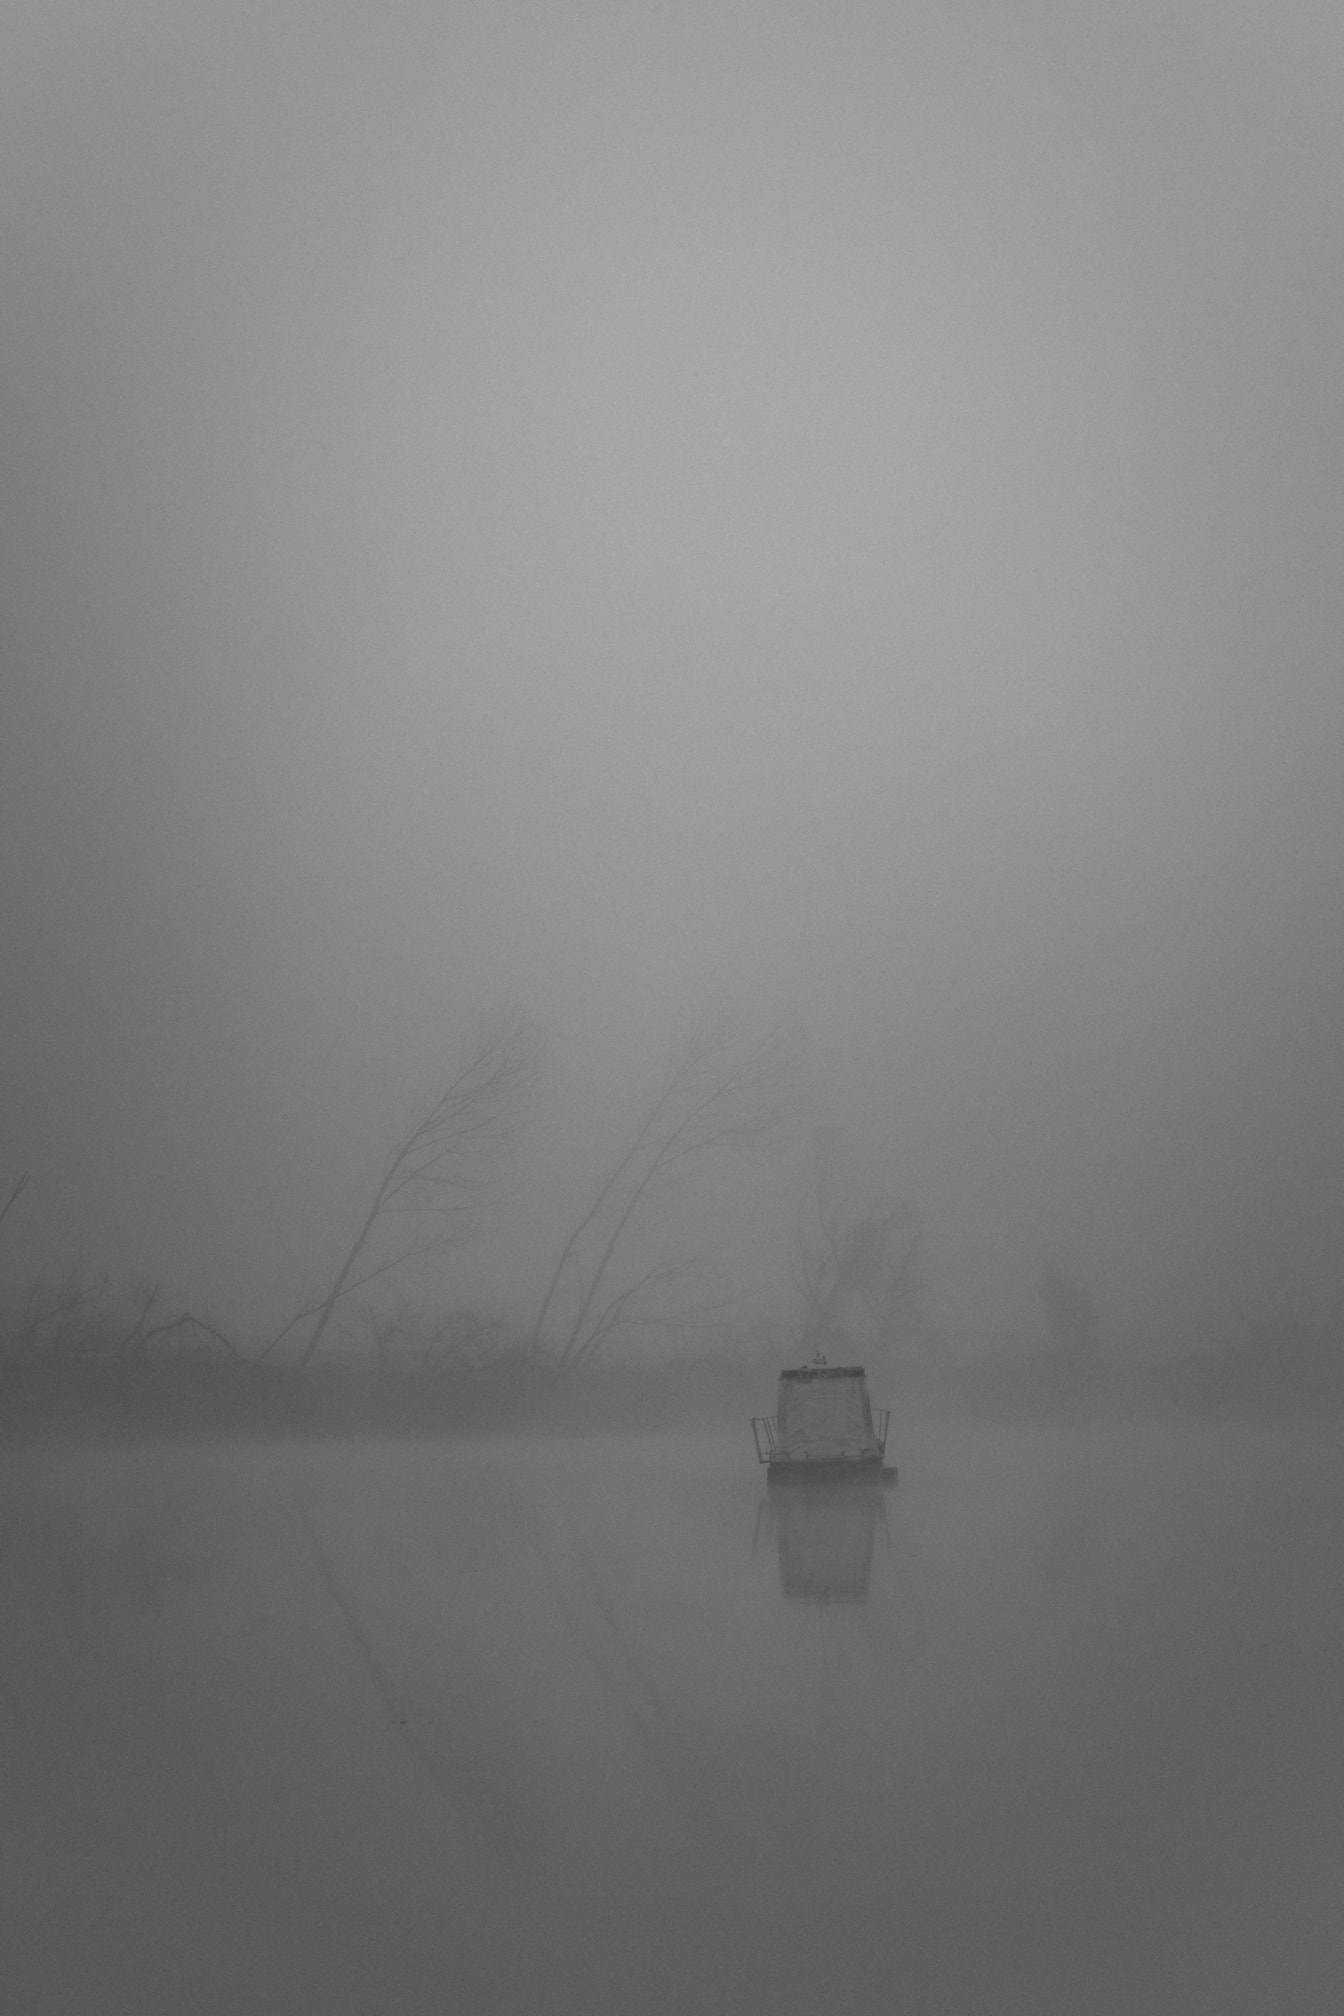 雾中一艘船的垂直方向黑白风景照片